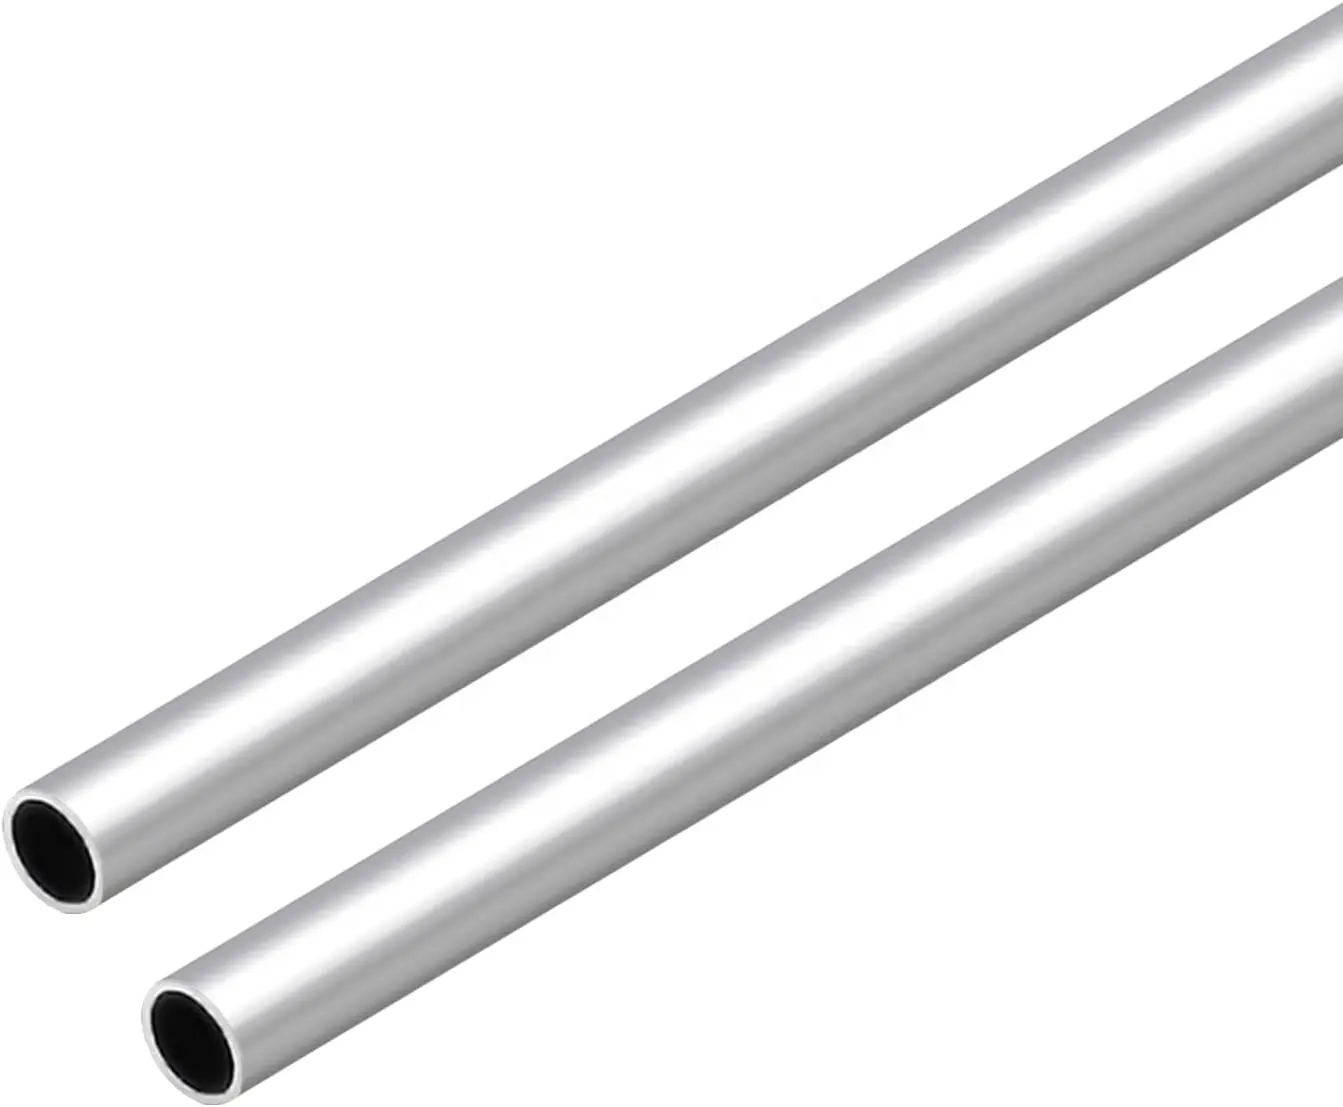 0.72 -- 1.5Mm 0.5 mm-80 Mm tabung Aluminium untuk peralatan listrik Anodized 160-205 Rm/Mpa 6061 tabung pipa Aluminium